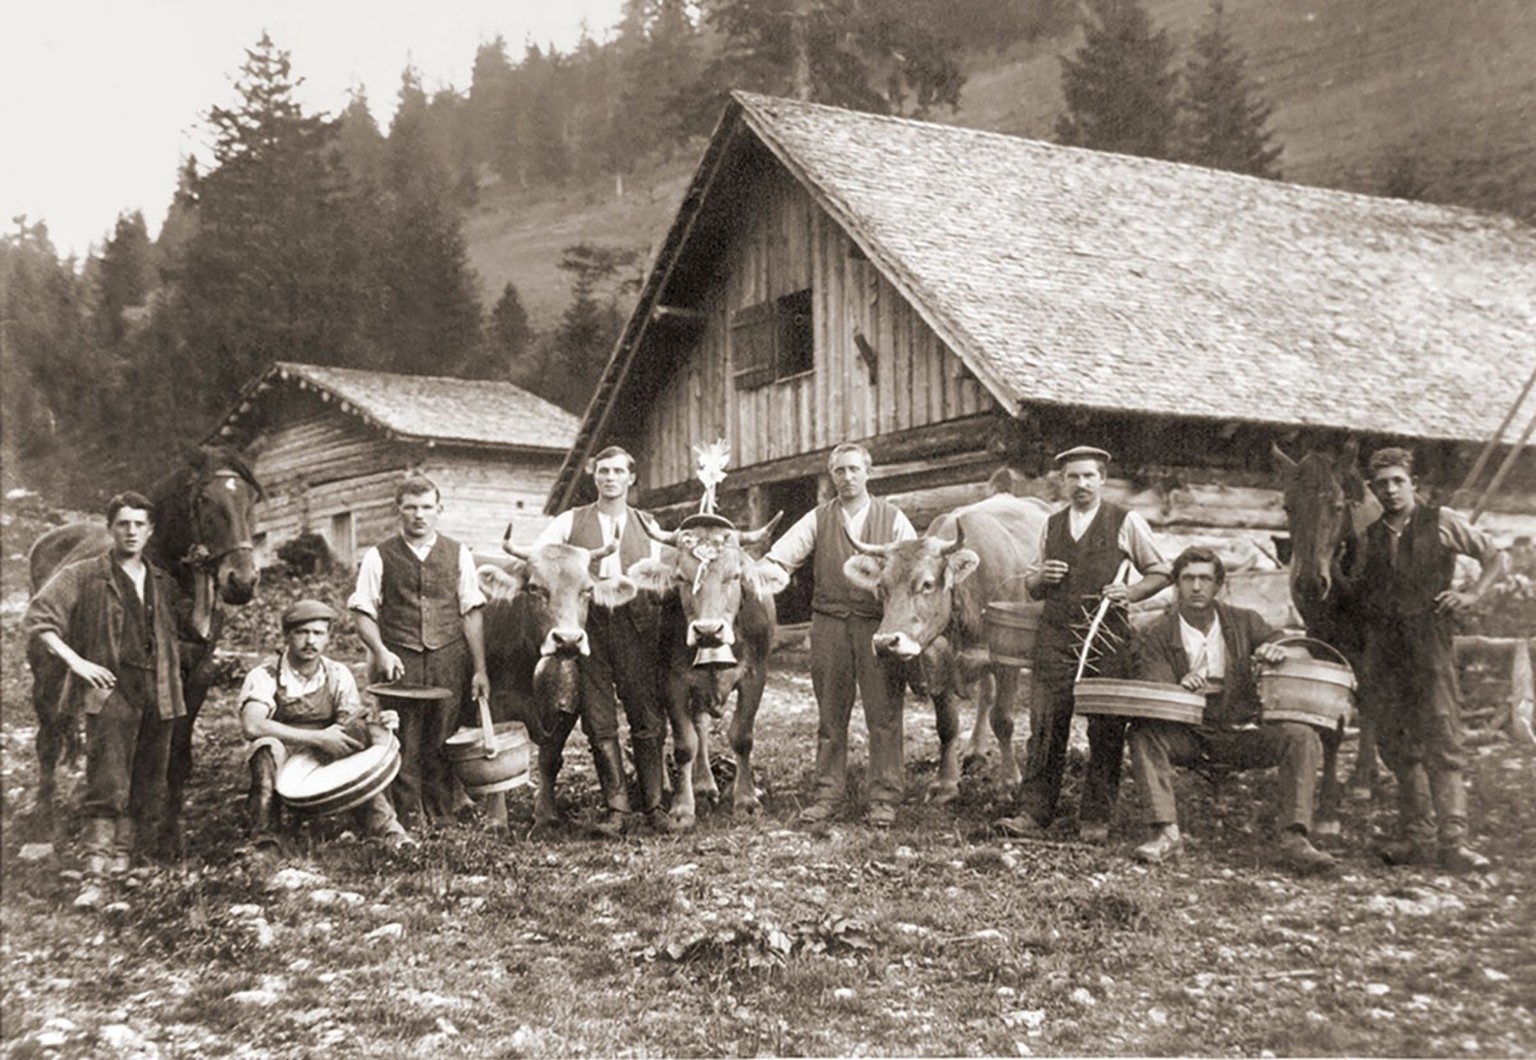 Paysans le jour de la désalpe de 1921, sur l’alpage de Pradamee, propriété de la coopérative alpine de Vaduz.
https://de.wikipedia.org/wiki/Datei:Alp_Pradamee_1921.jpg